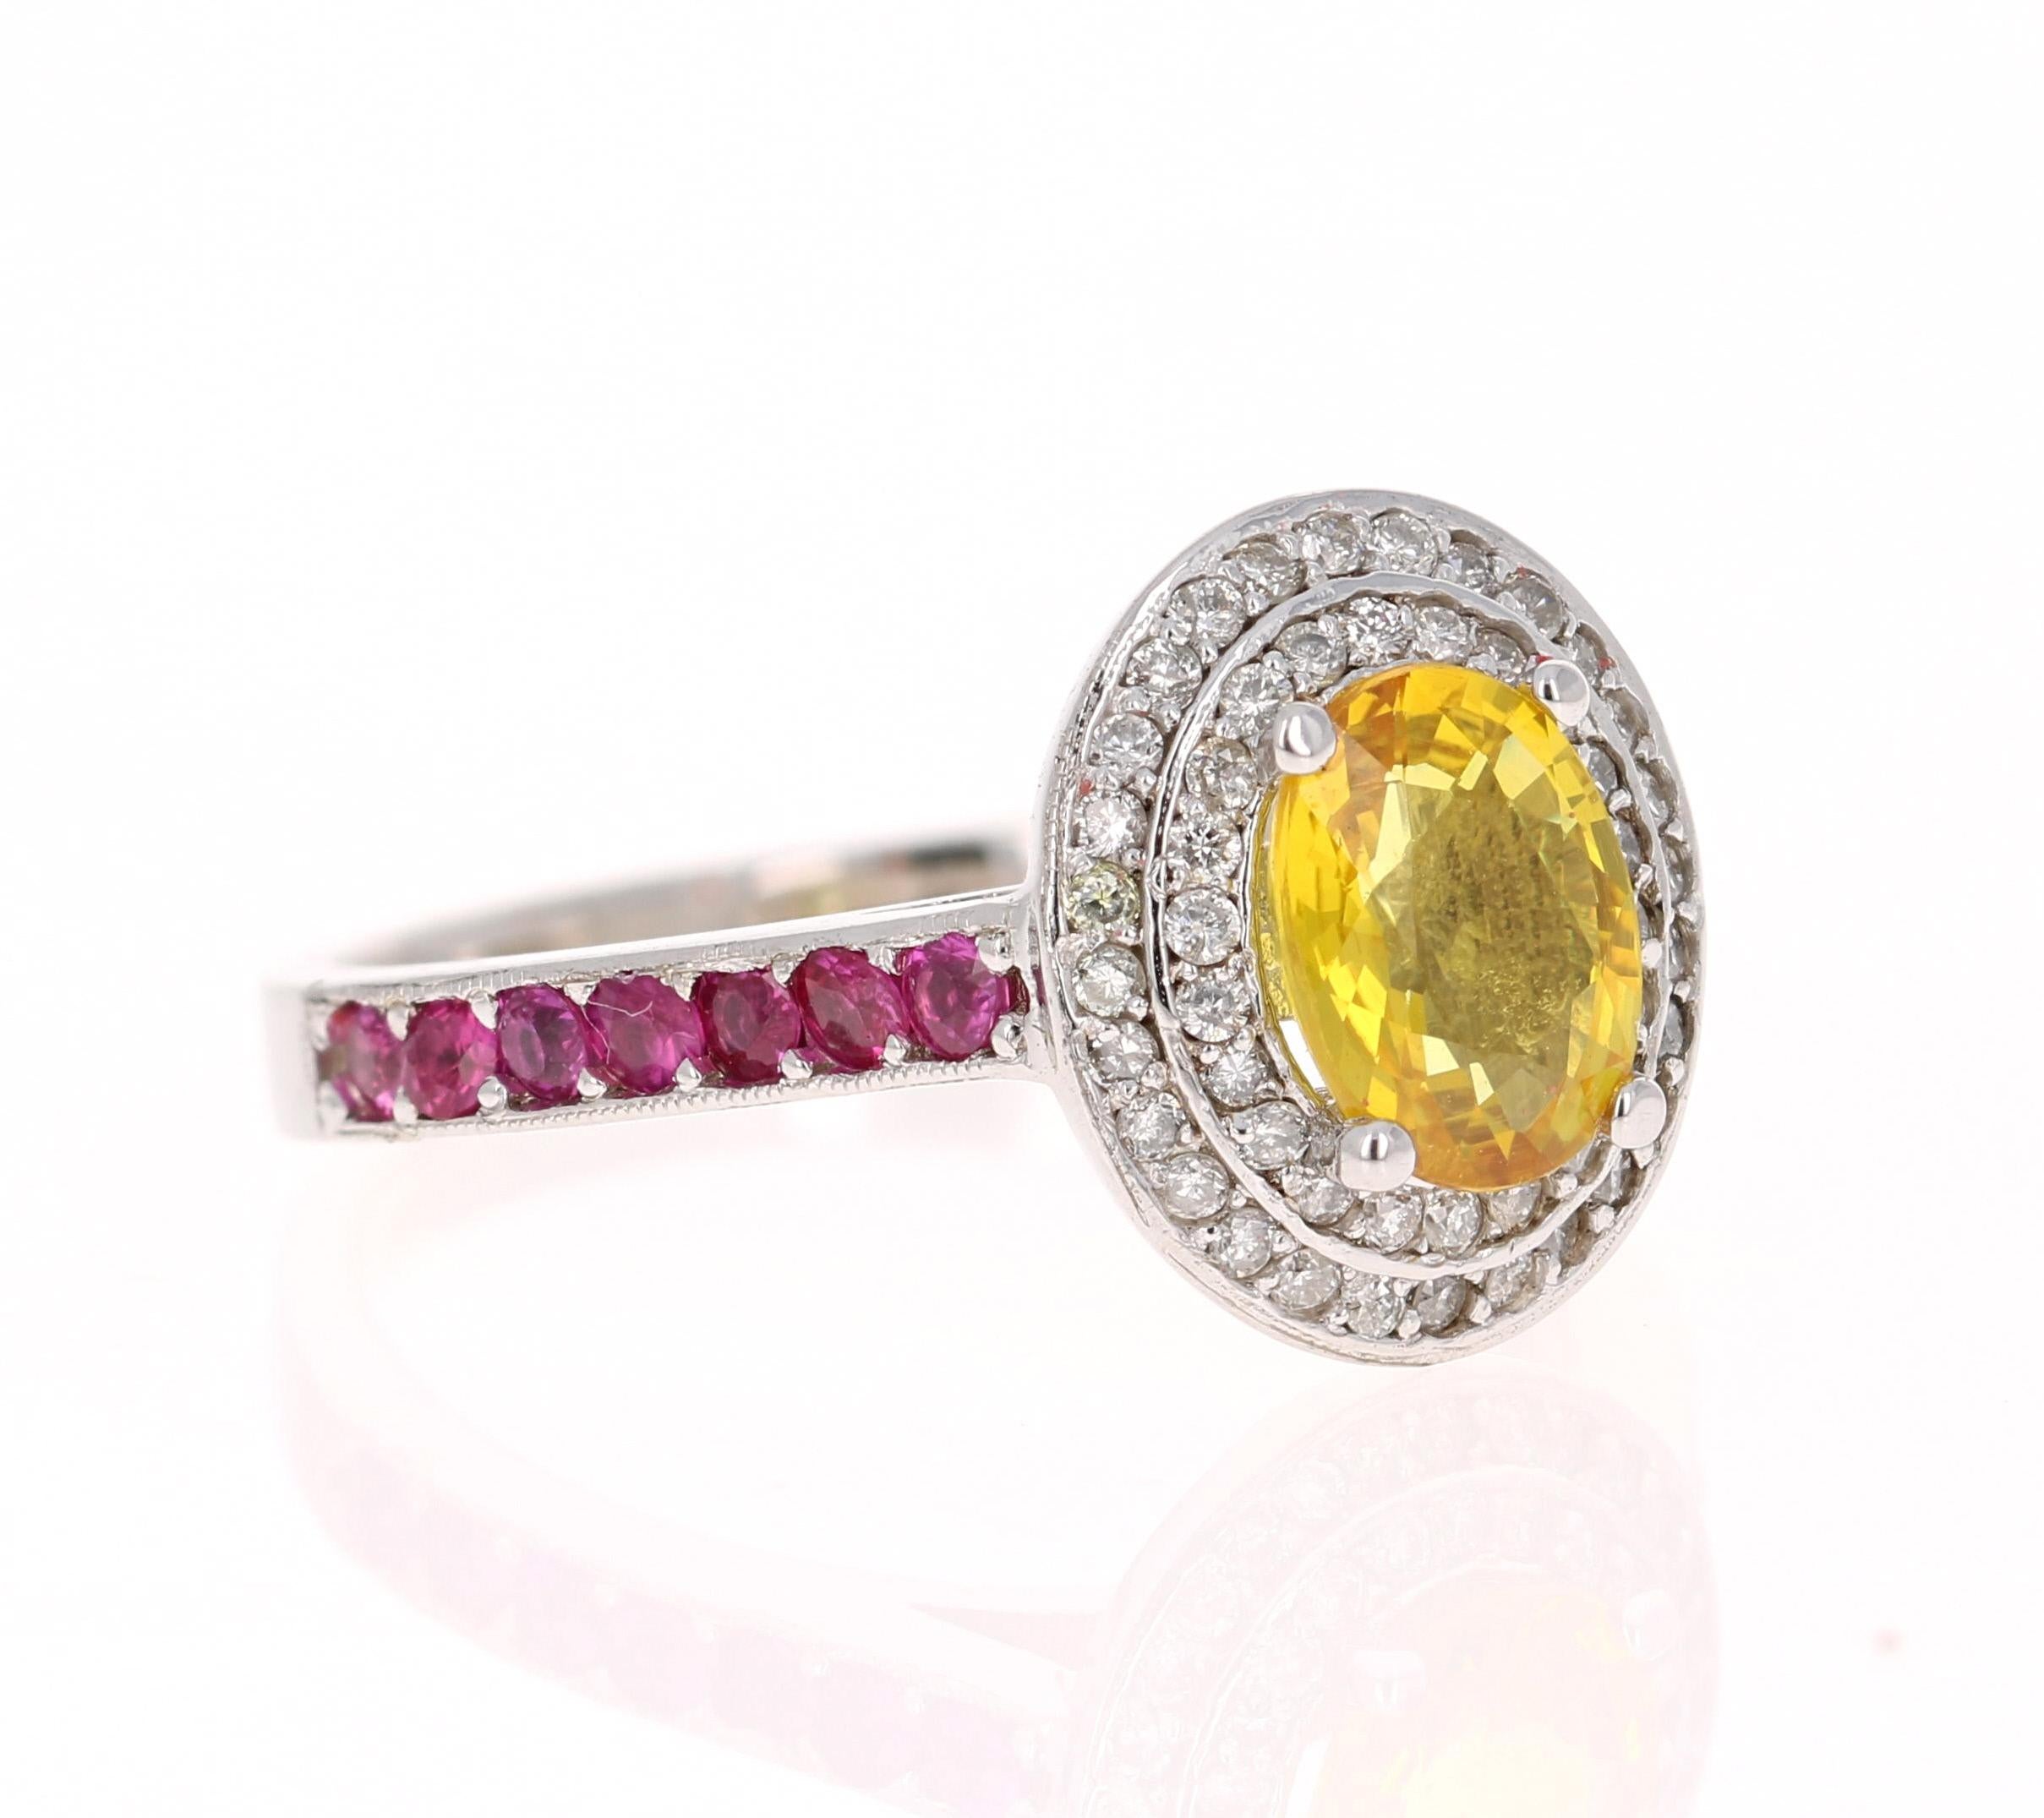 Dieser Ring hat einen 1,16 Karat Oval Cut Natural Yellow Sapphire. 
Es hat einen Halo aus 54 Diamanten im Rundschliff mit einem Gewicht von 0,29 Karat (Reinheit: SI, Farbe: F) und 14 rosa Saphiren mit einem Gewicht von 0,42 Karat. Das